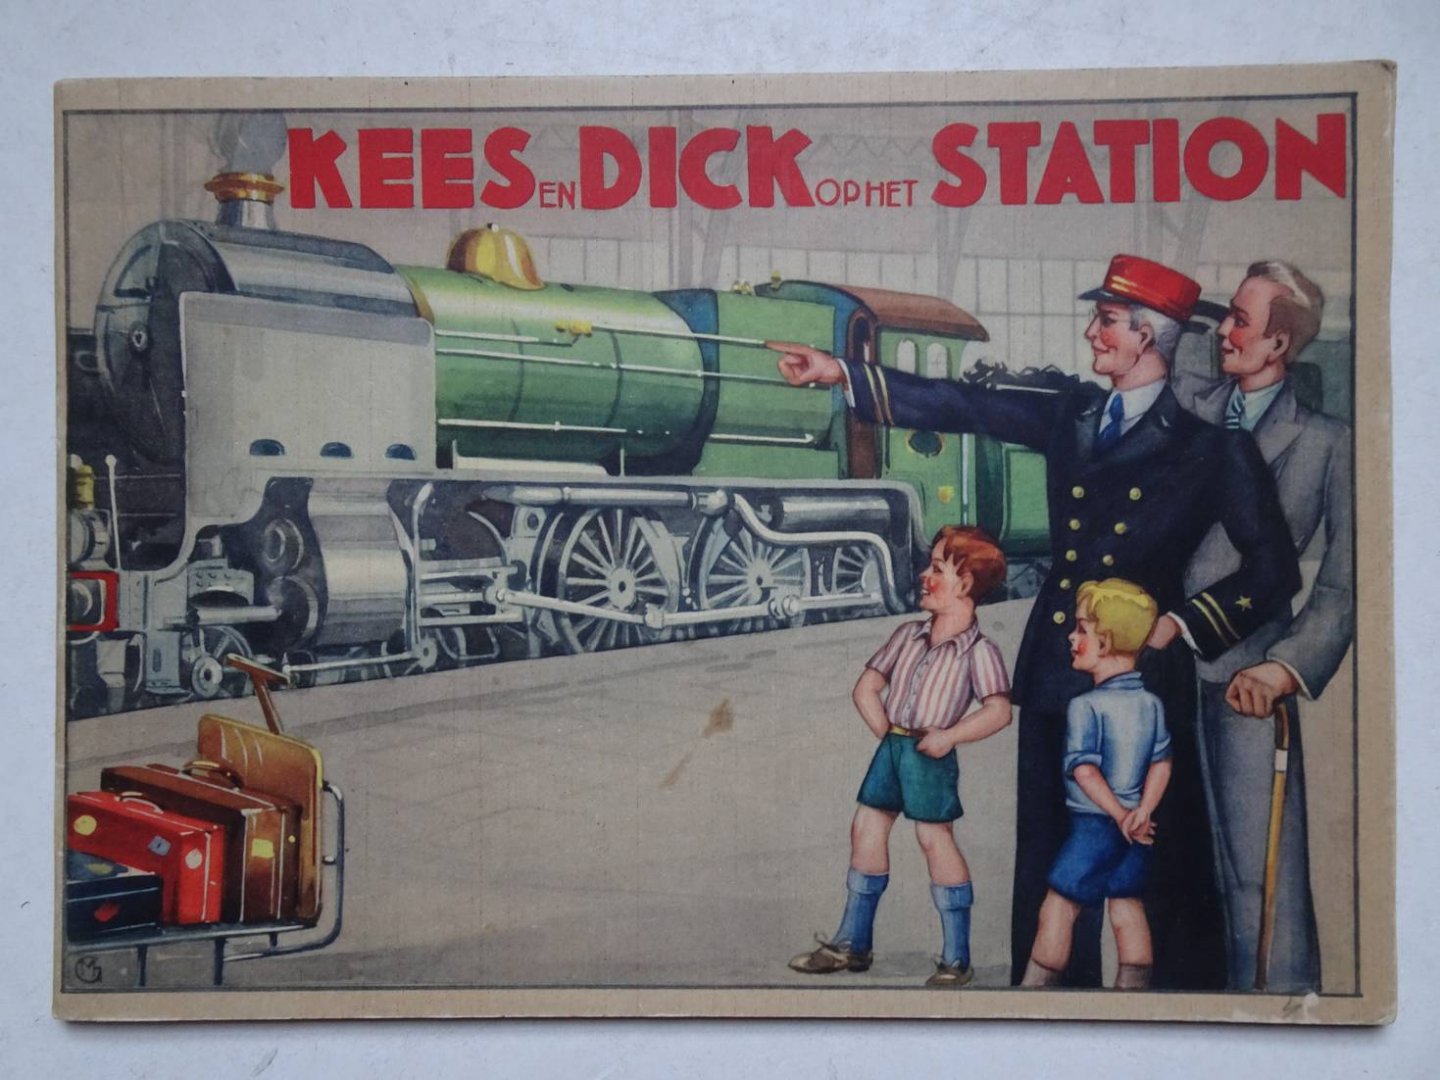 Seumeren, Gerard van & Piet Kievit. - Kees en Dick op het Station. Kees en Dick-Serie, eerste deel.